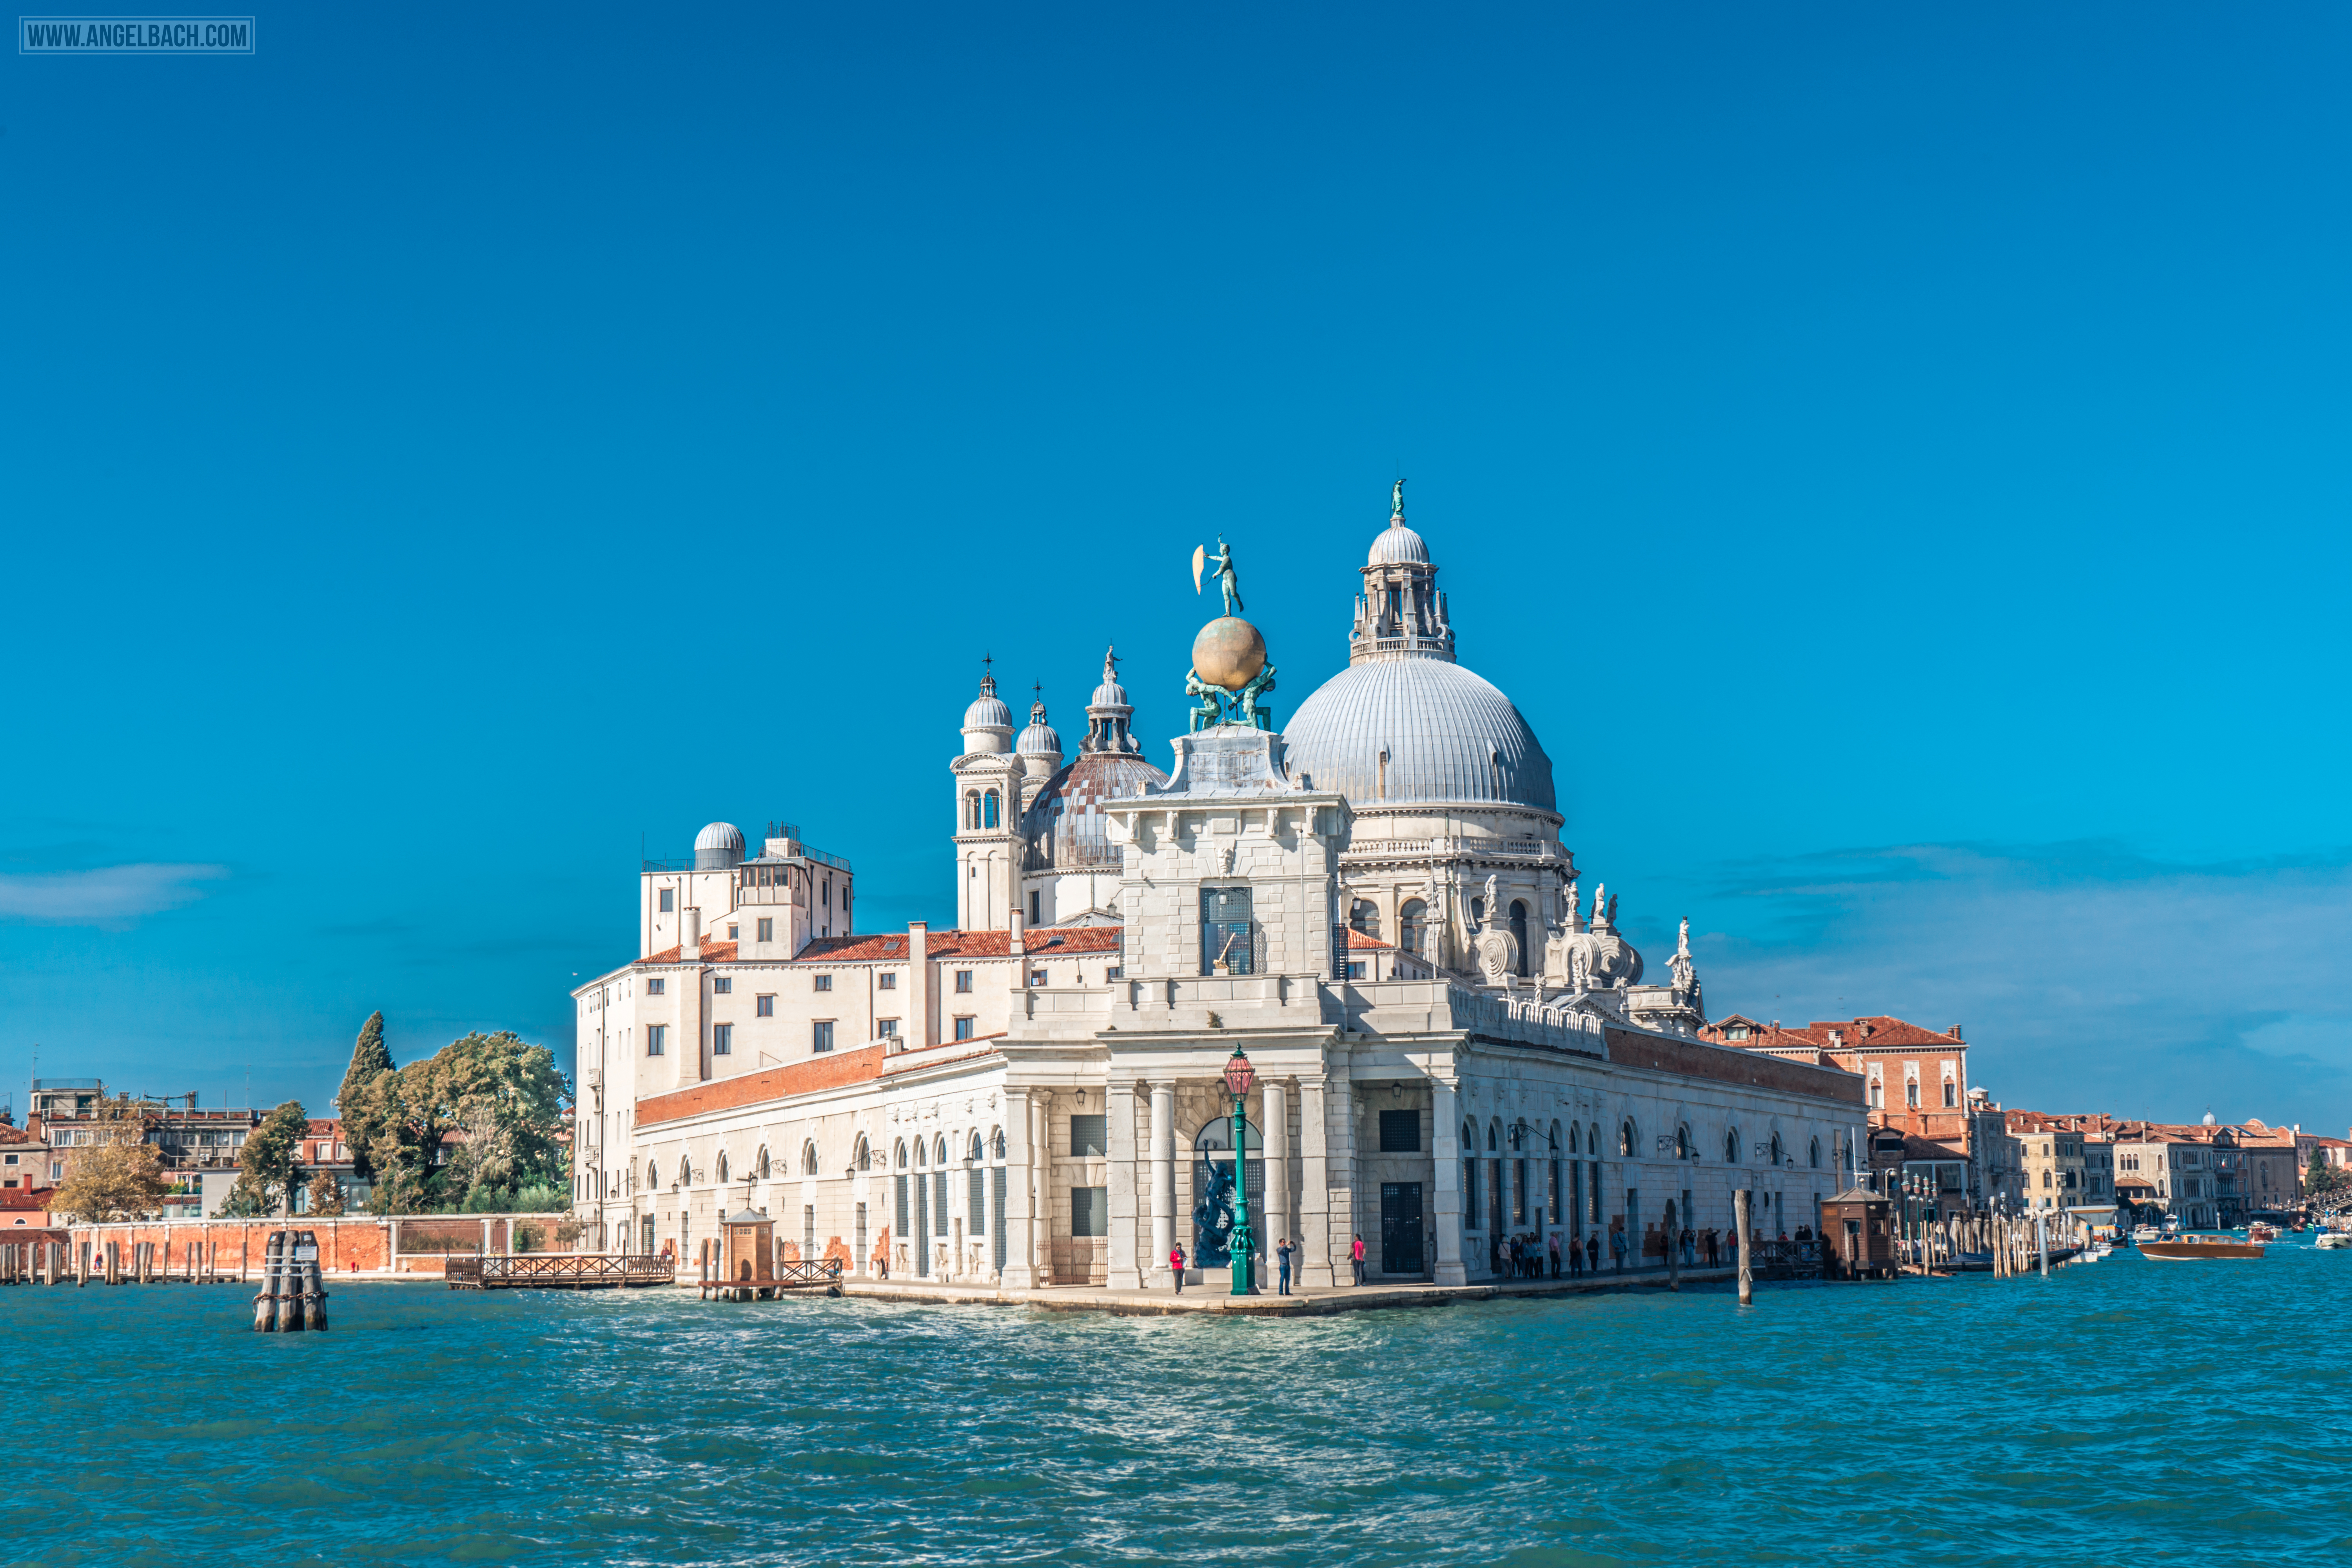 Venice Architecture, Grand Canal, Sailing, boats, gandola ride, Adriatic Sea, Venice Lagoon, Renaissance, Gothic, Vintage Venice, Venezia, Italy, Il Redentore